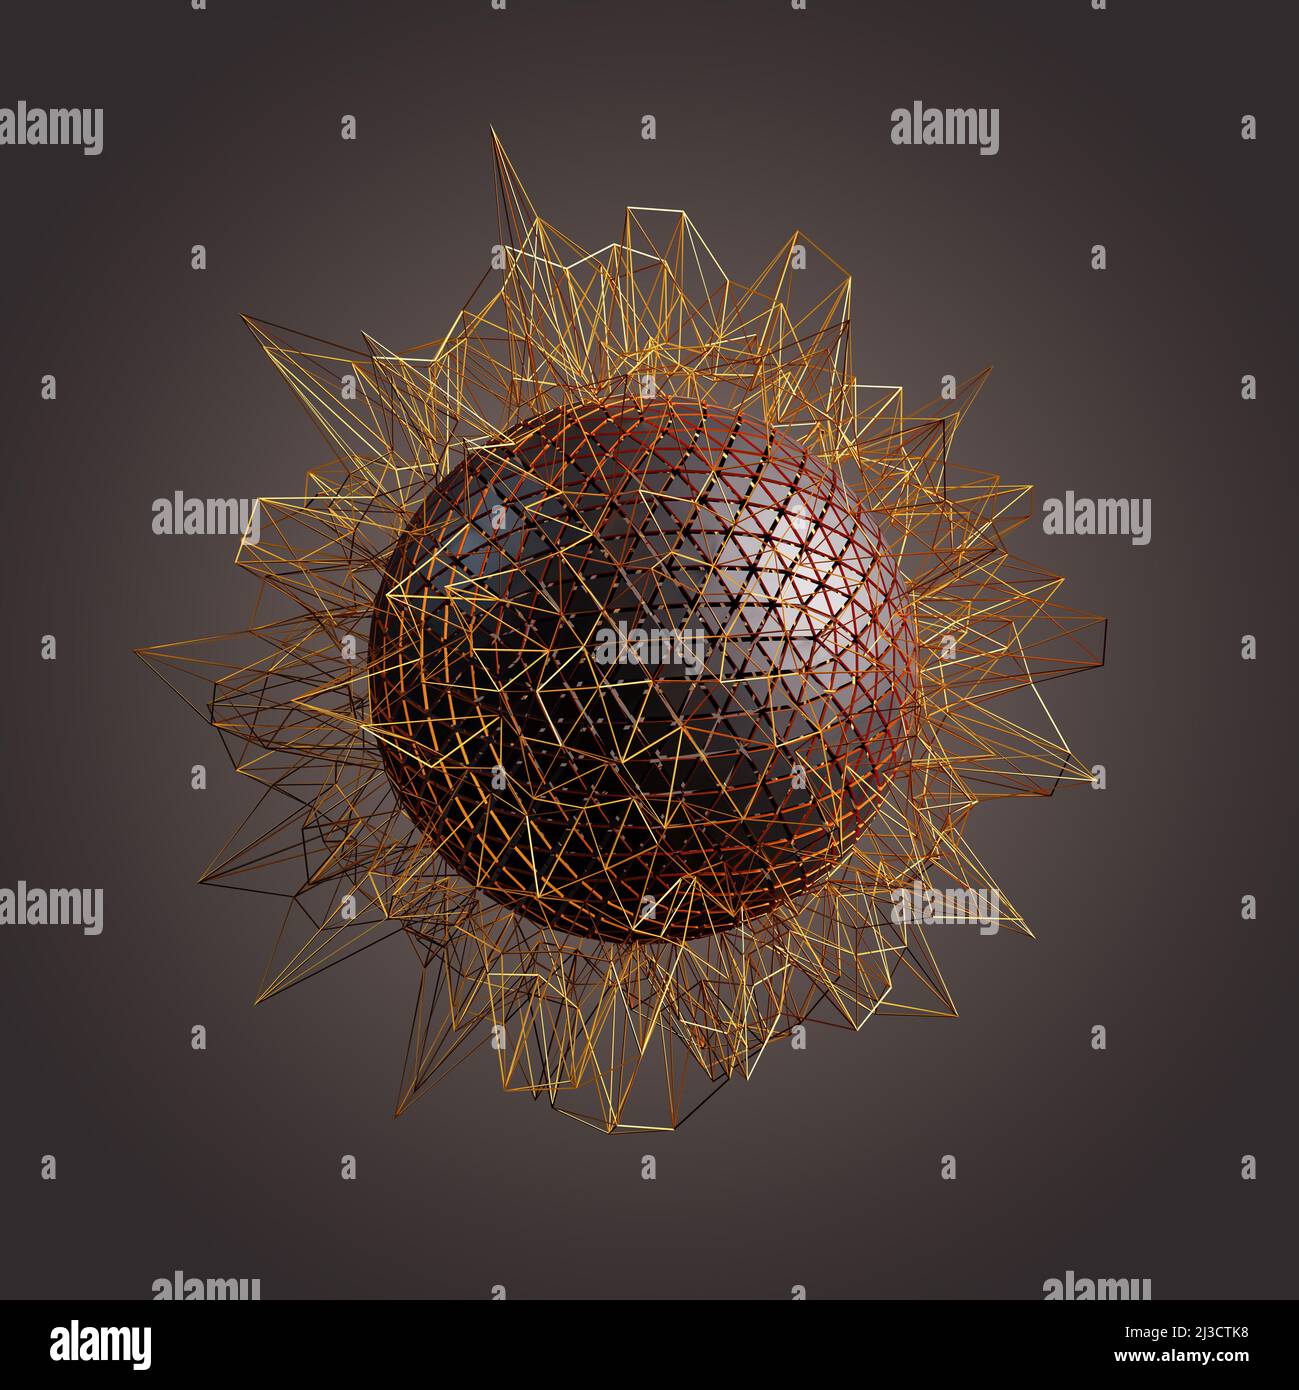 Imagen de esfera abstracta con espículas alrededor y la esfera formada por triángulos. Concepto de comunicación o complejidad. Foto de stock